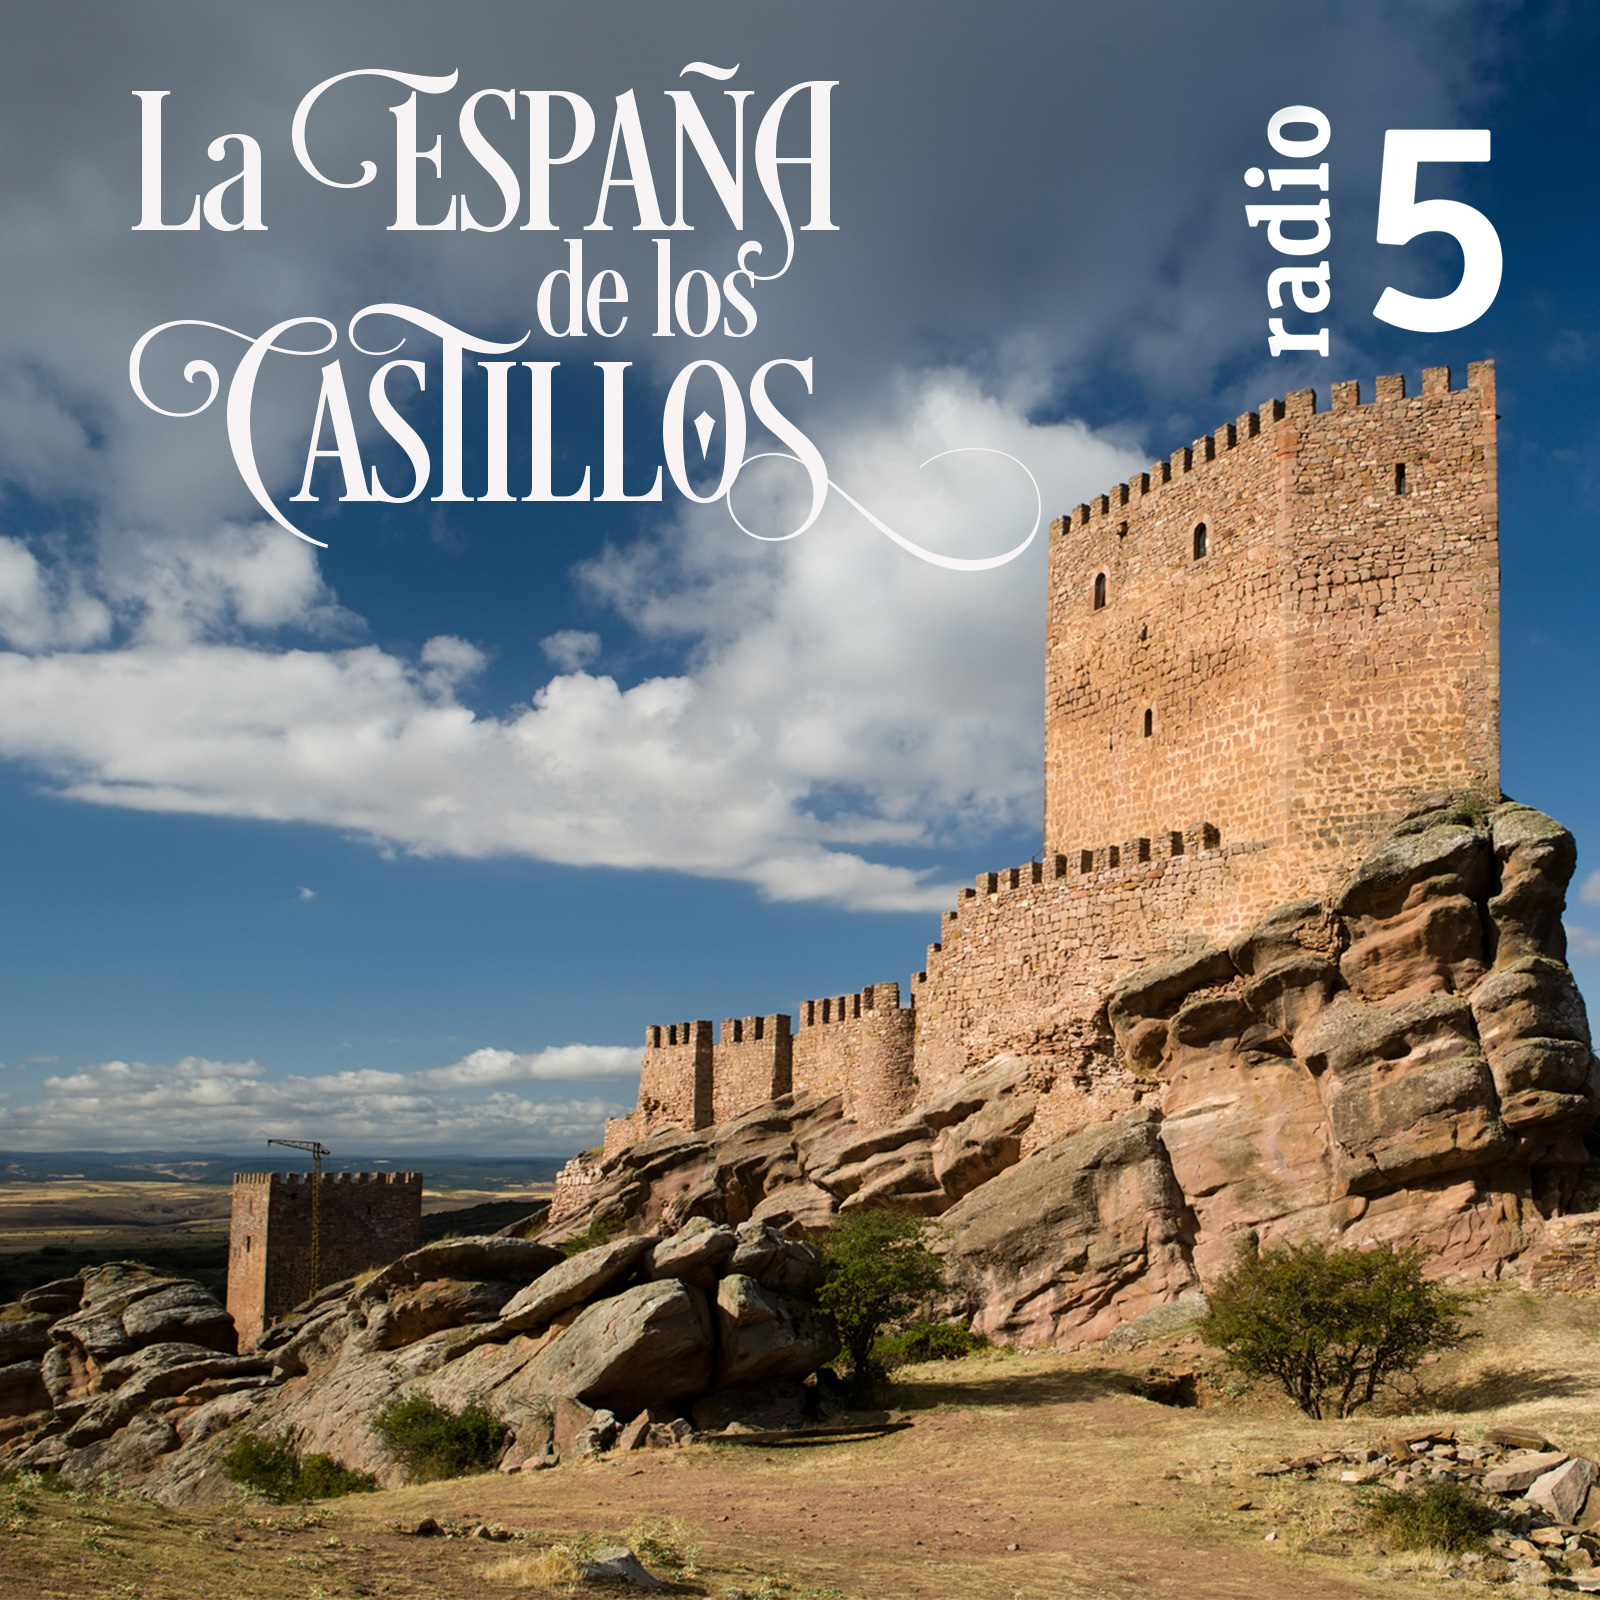 La España de los castillos - Castillo de Saldaña - 08/06/19